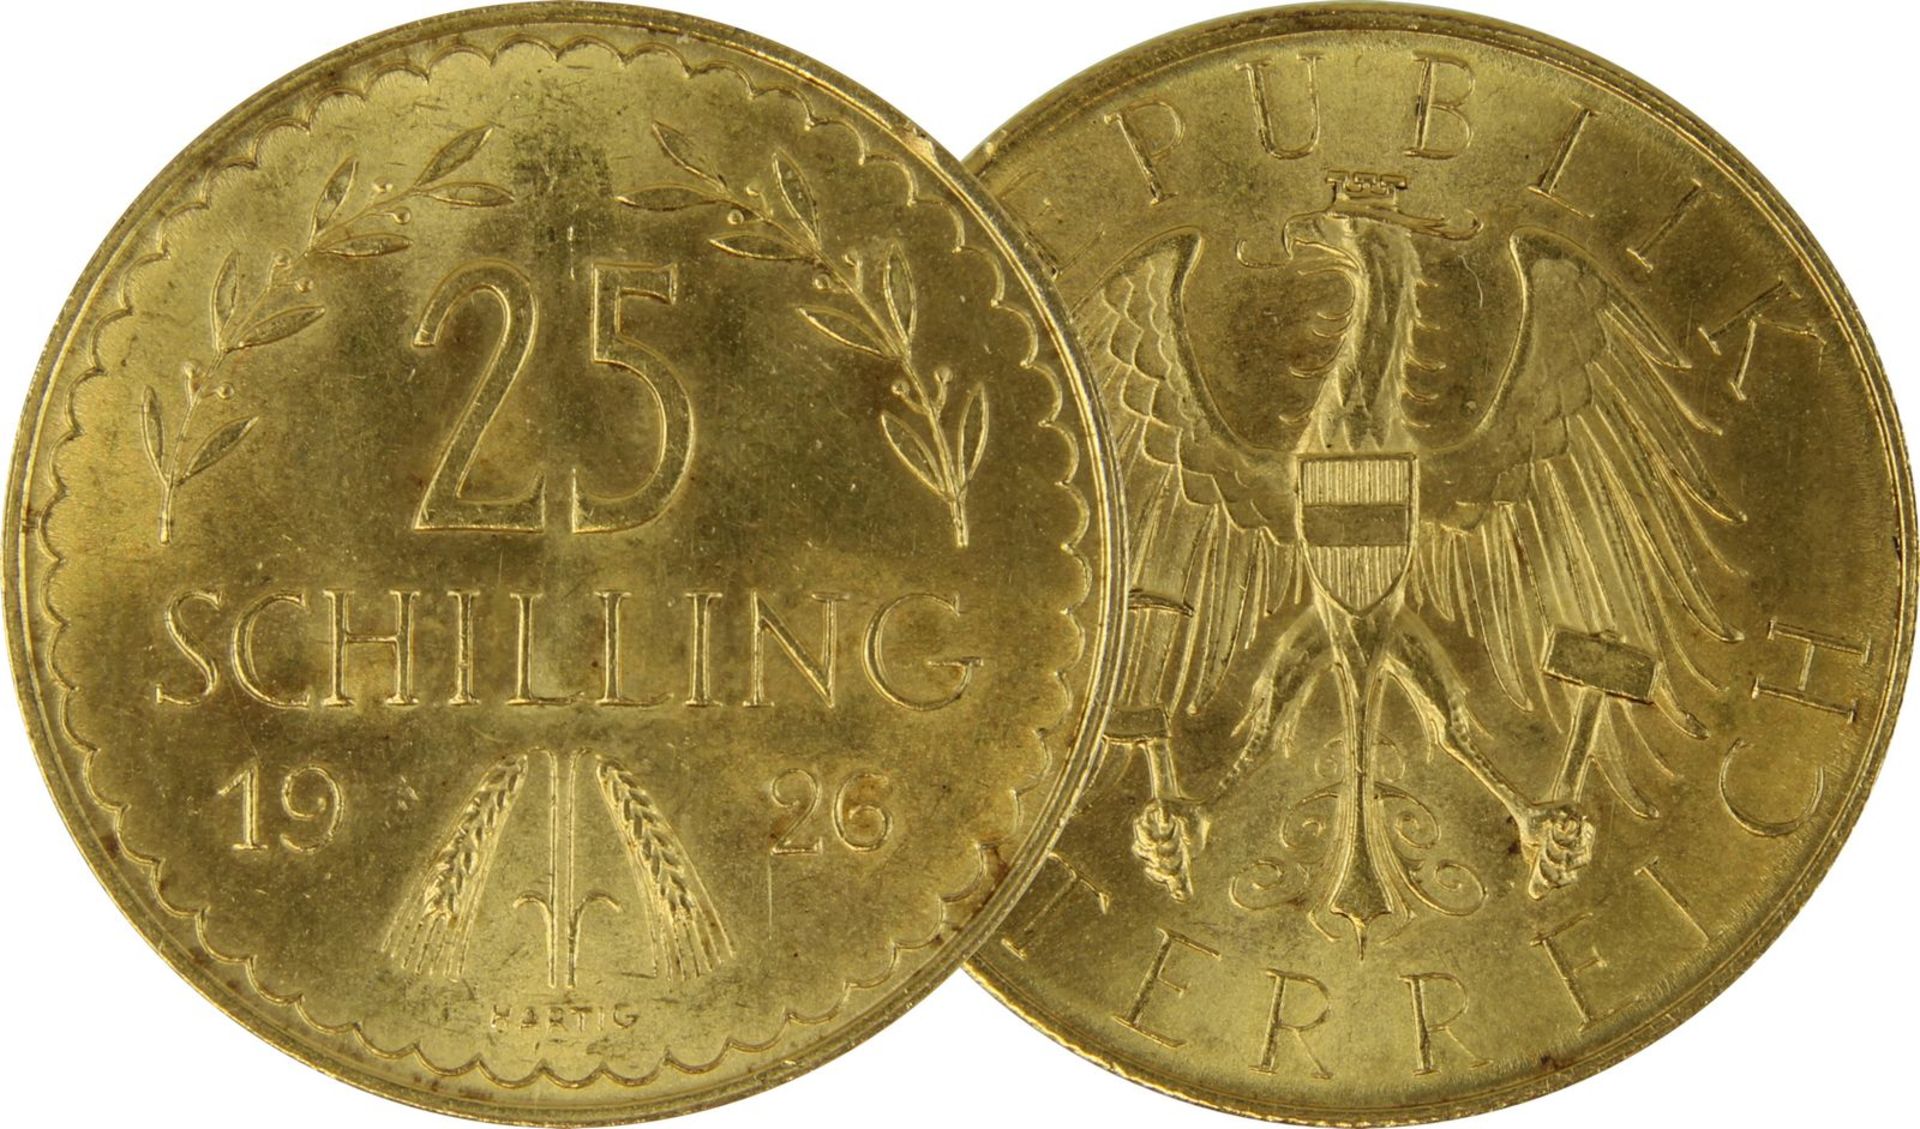 Goldmünze zu 25 Schilling, Republik Österreich 1926, Avers: Nominalwert, Jahreszahl 1926. Lorbeer u.